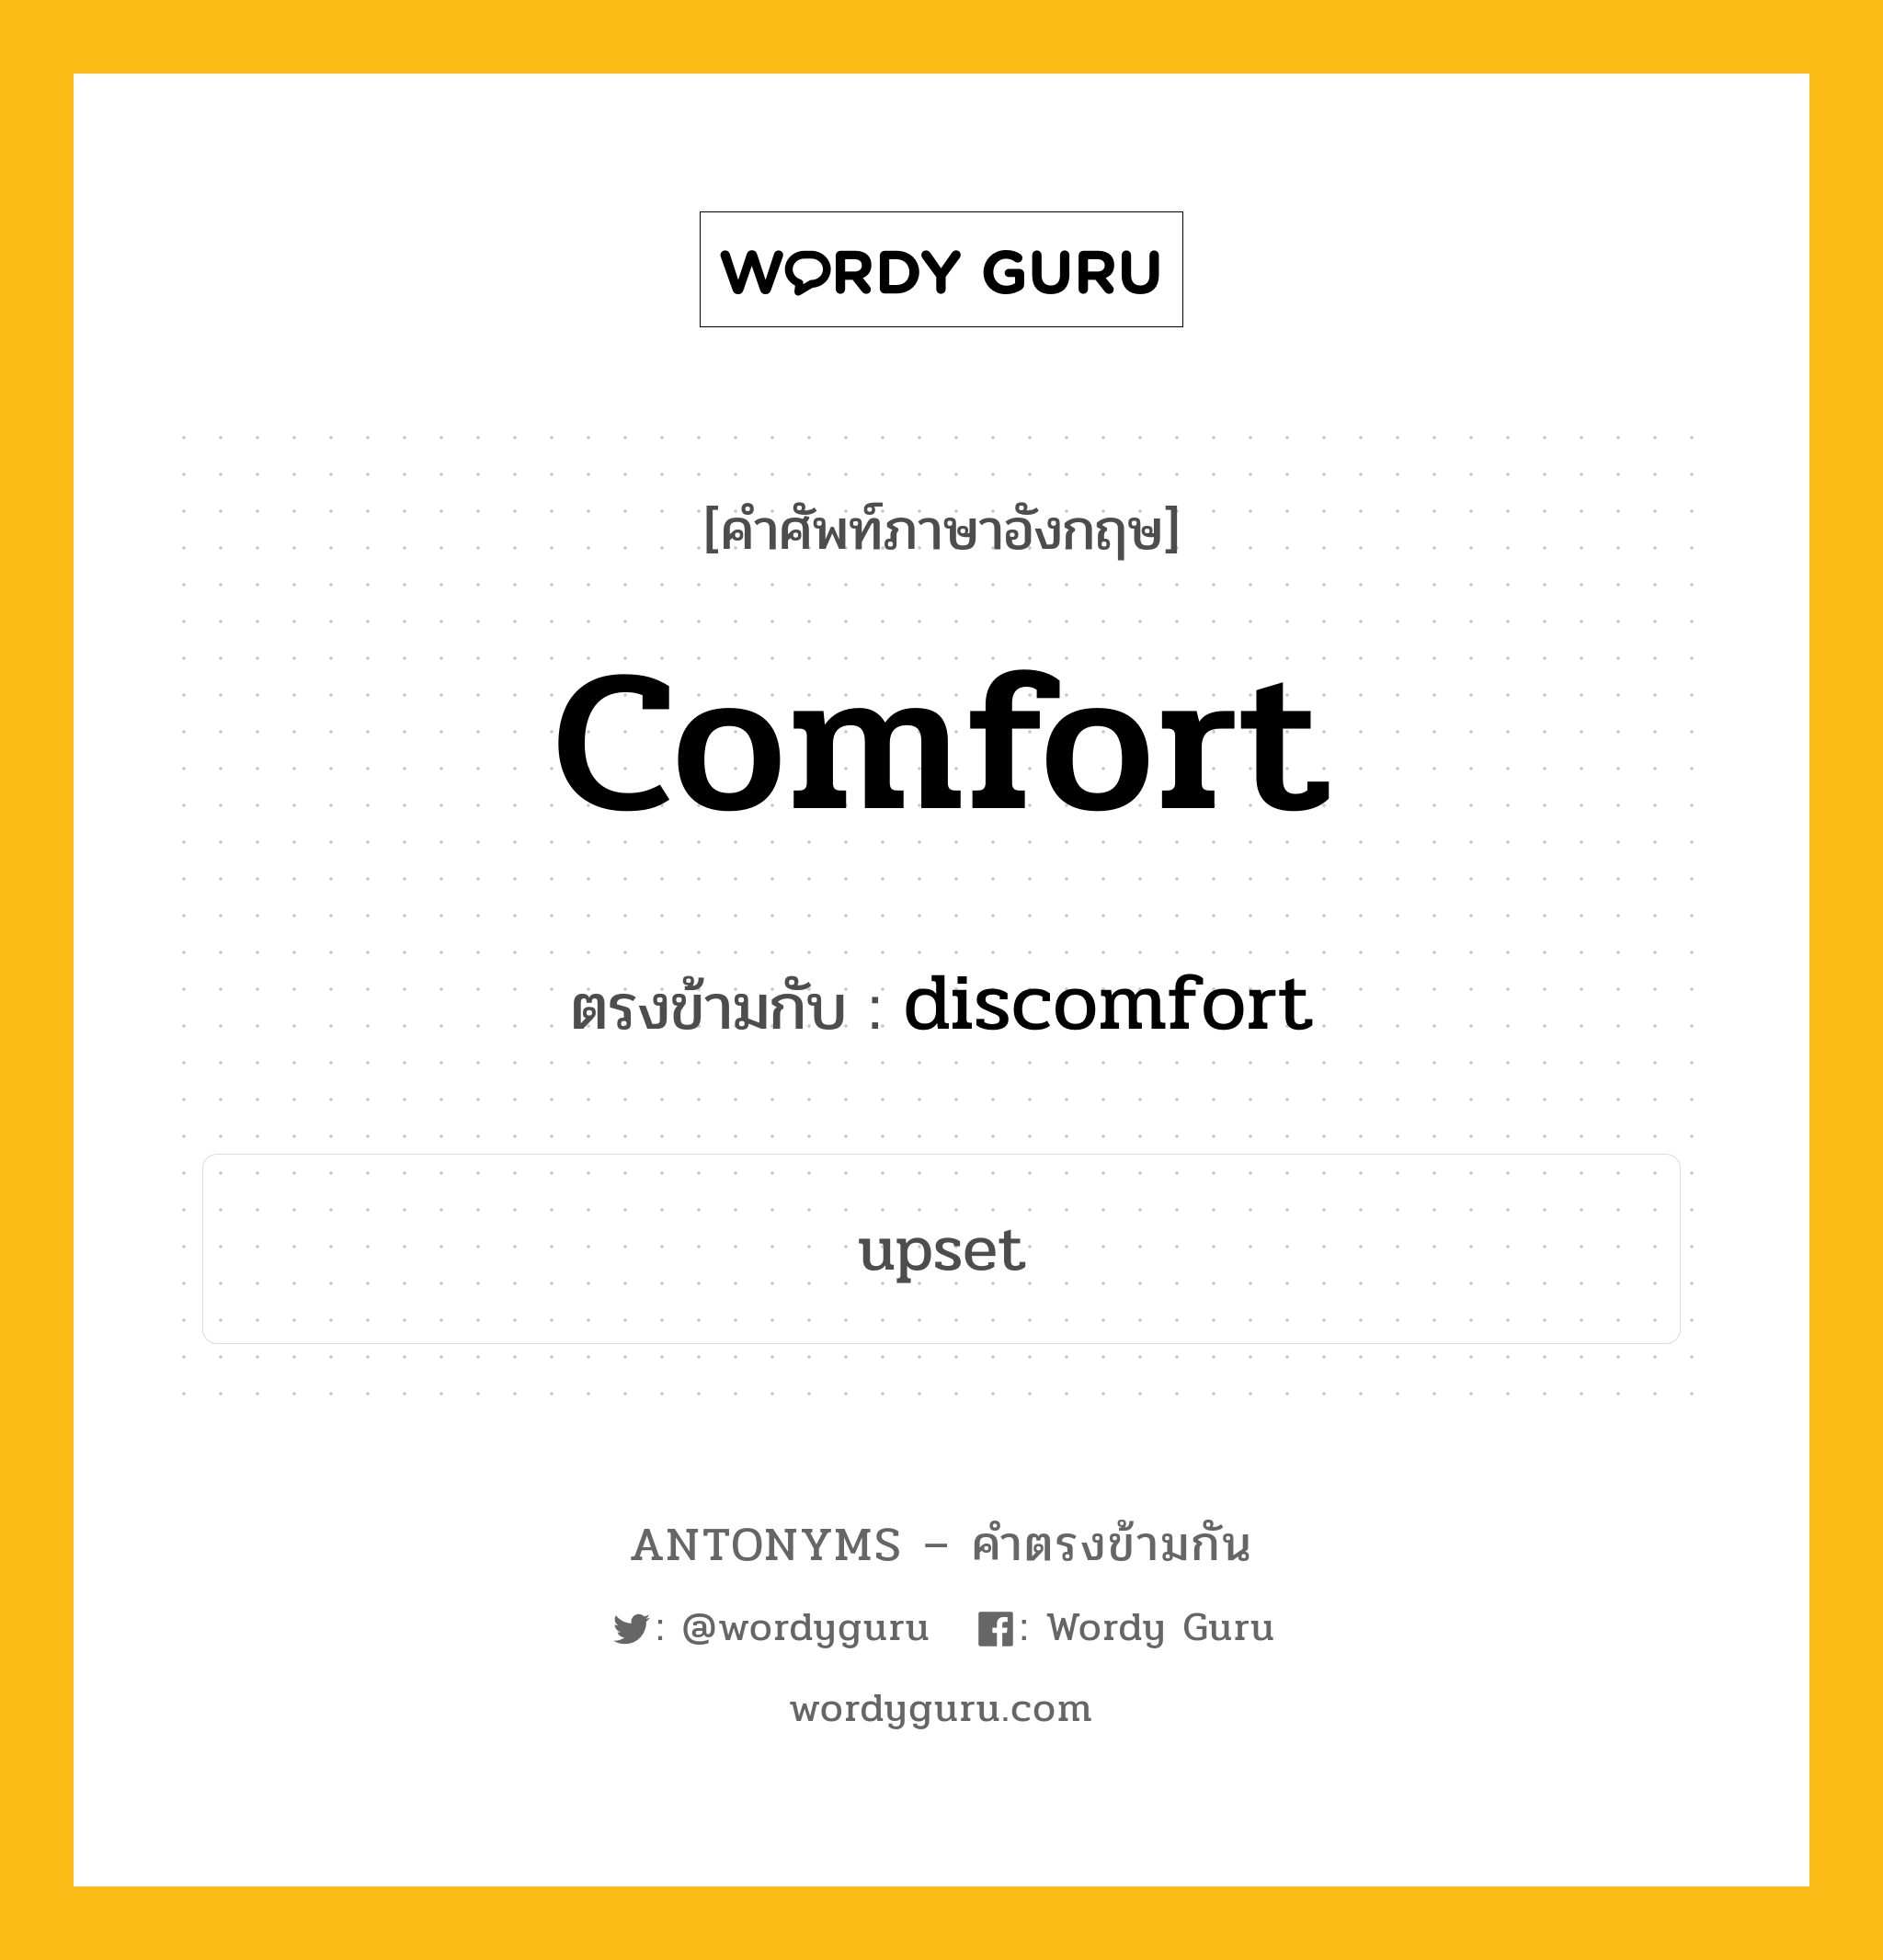 comfort เป็นคำตรงข้ามกับคำไหนบ้าง?, คำศัพท์ภาษาอังกฤษ comfort ตรงข้ามกับ discomfort หมวด discomfort